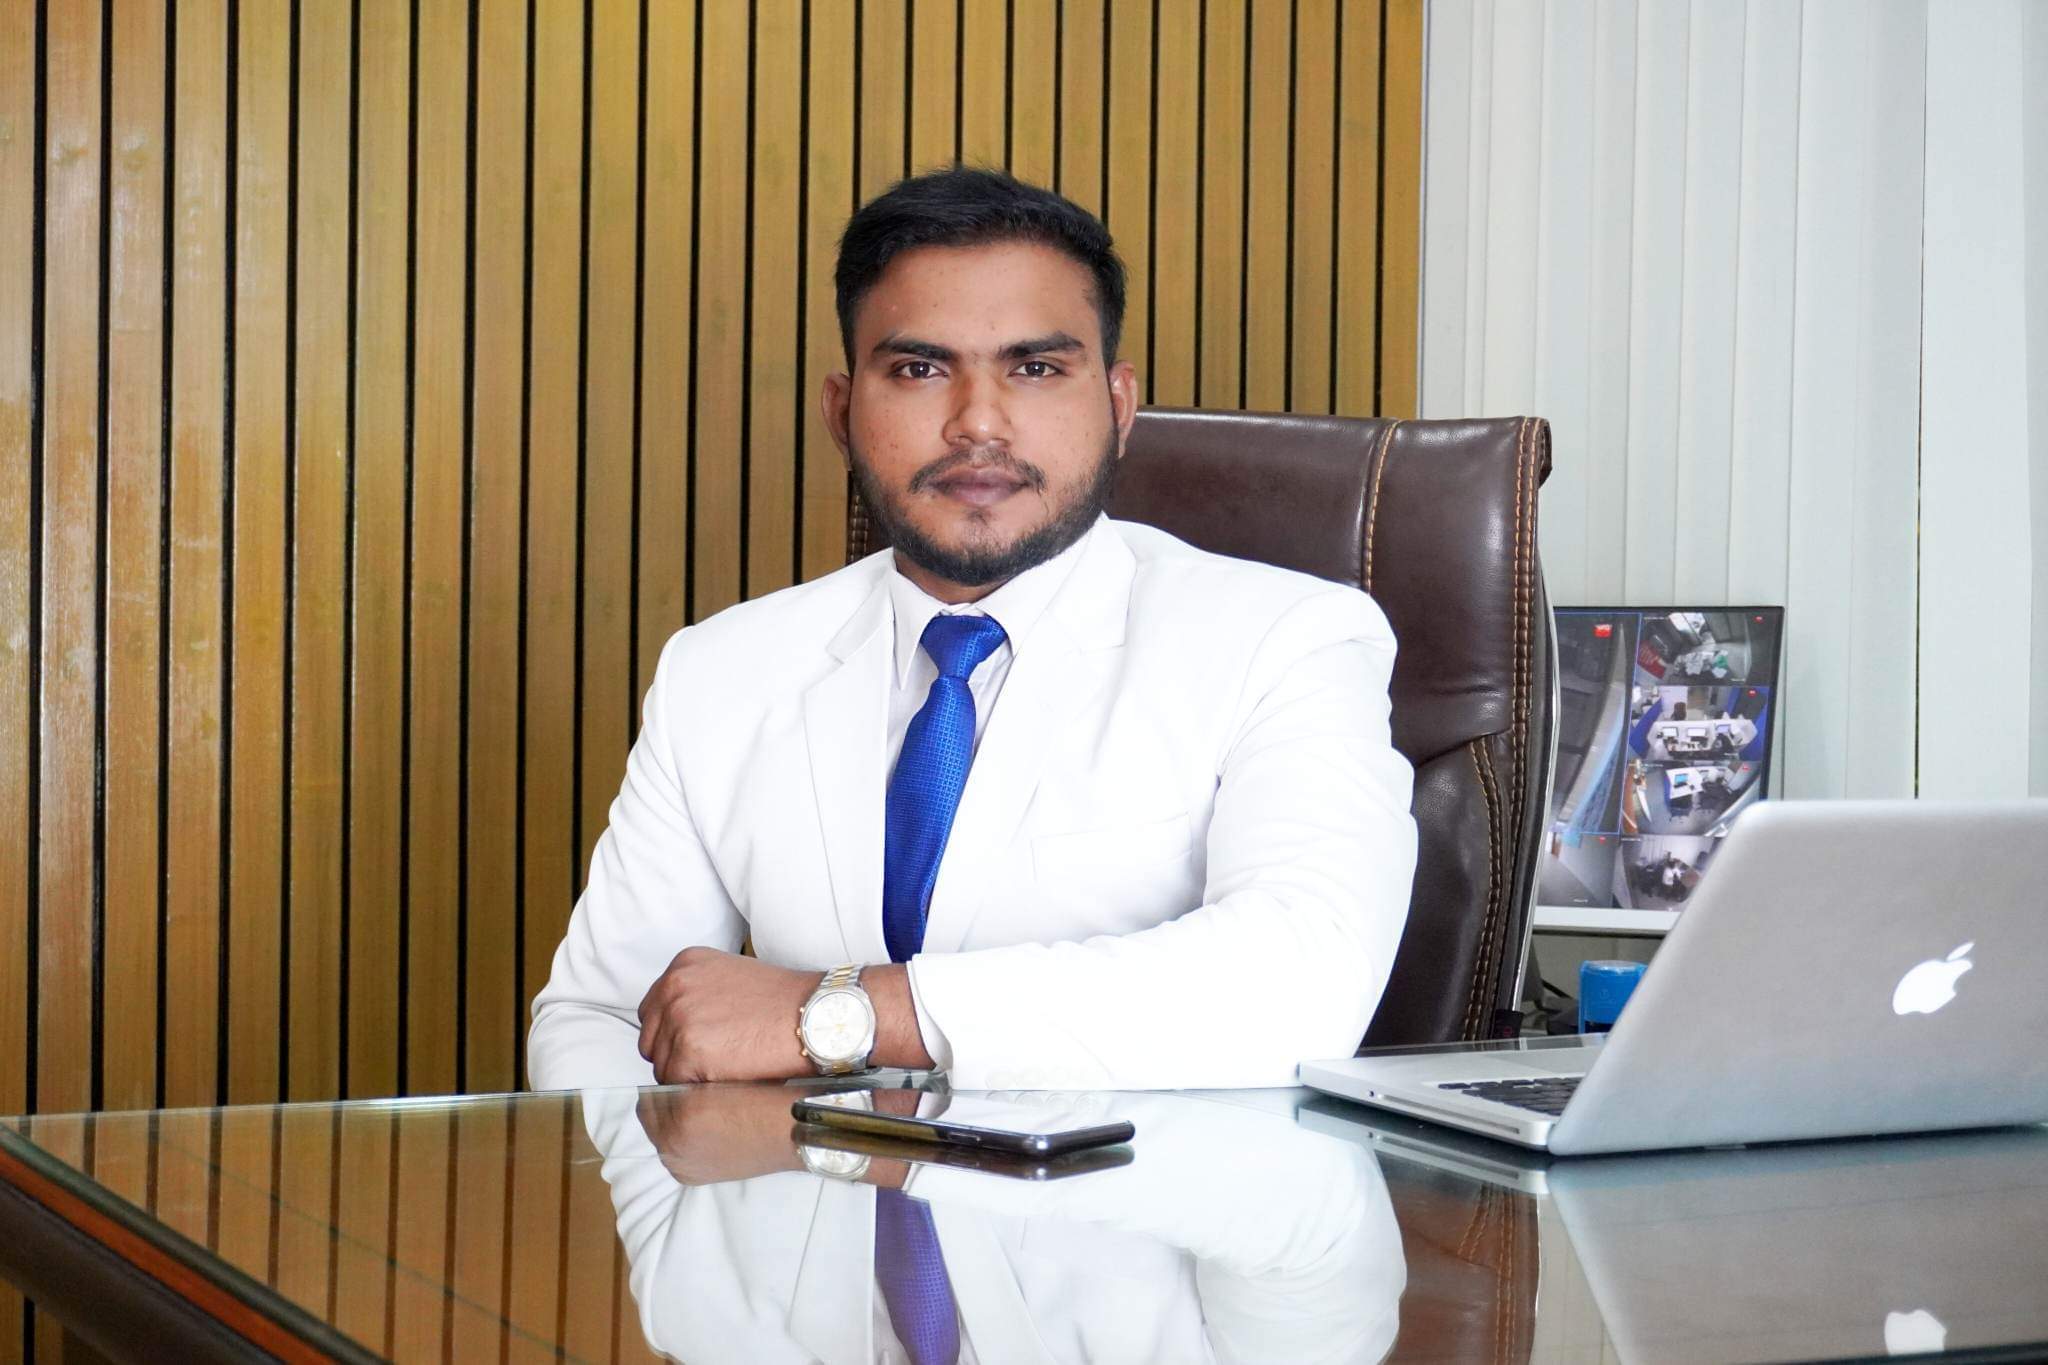 Mamun Hasan a name of successful entrepreneur